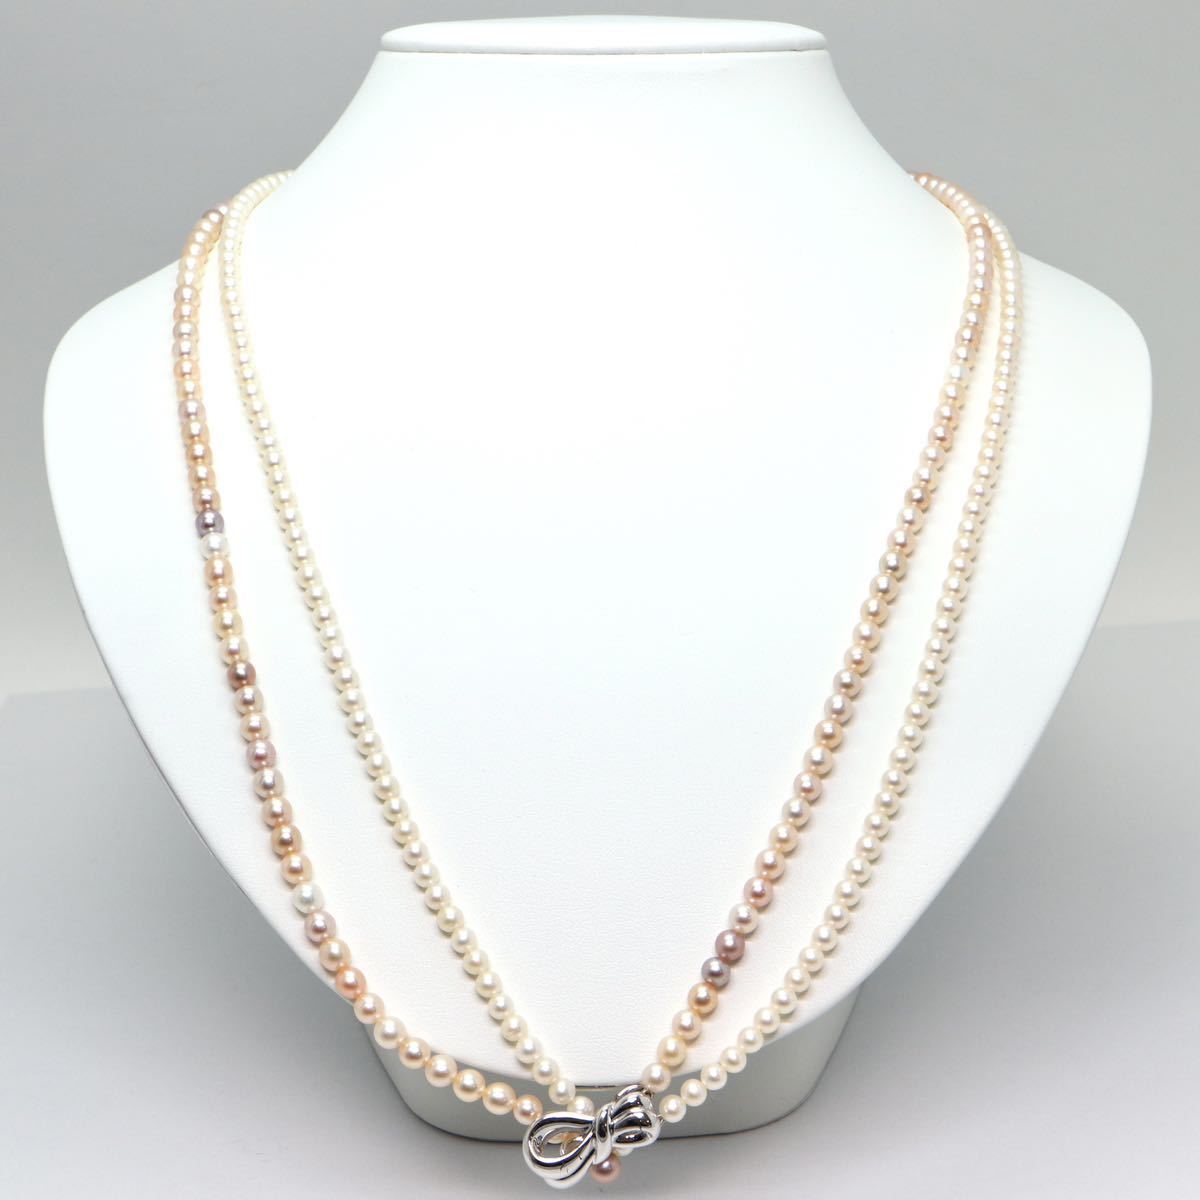 《本真珠2連ネックレス》M 4.0-5.0mm珠 37.8g 約60.5/62.5cm pearl necklace ジュエリー jewelry DE5/ED0_画像4